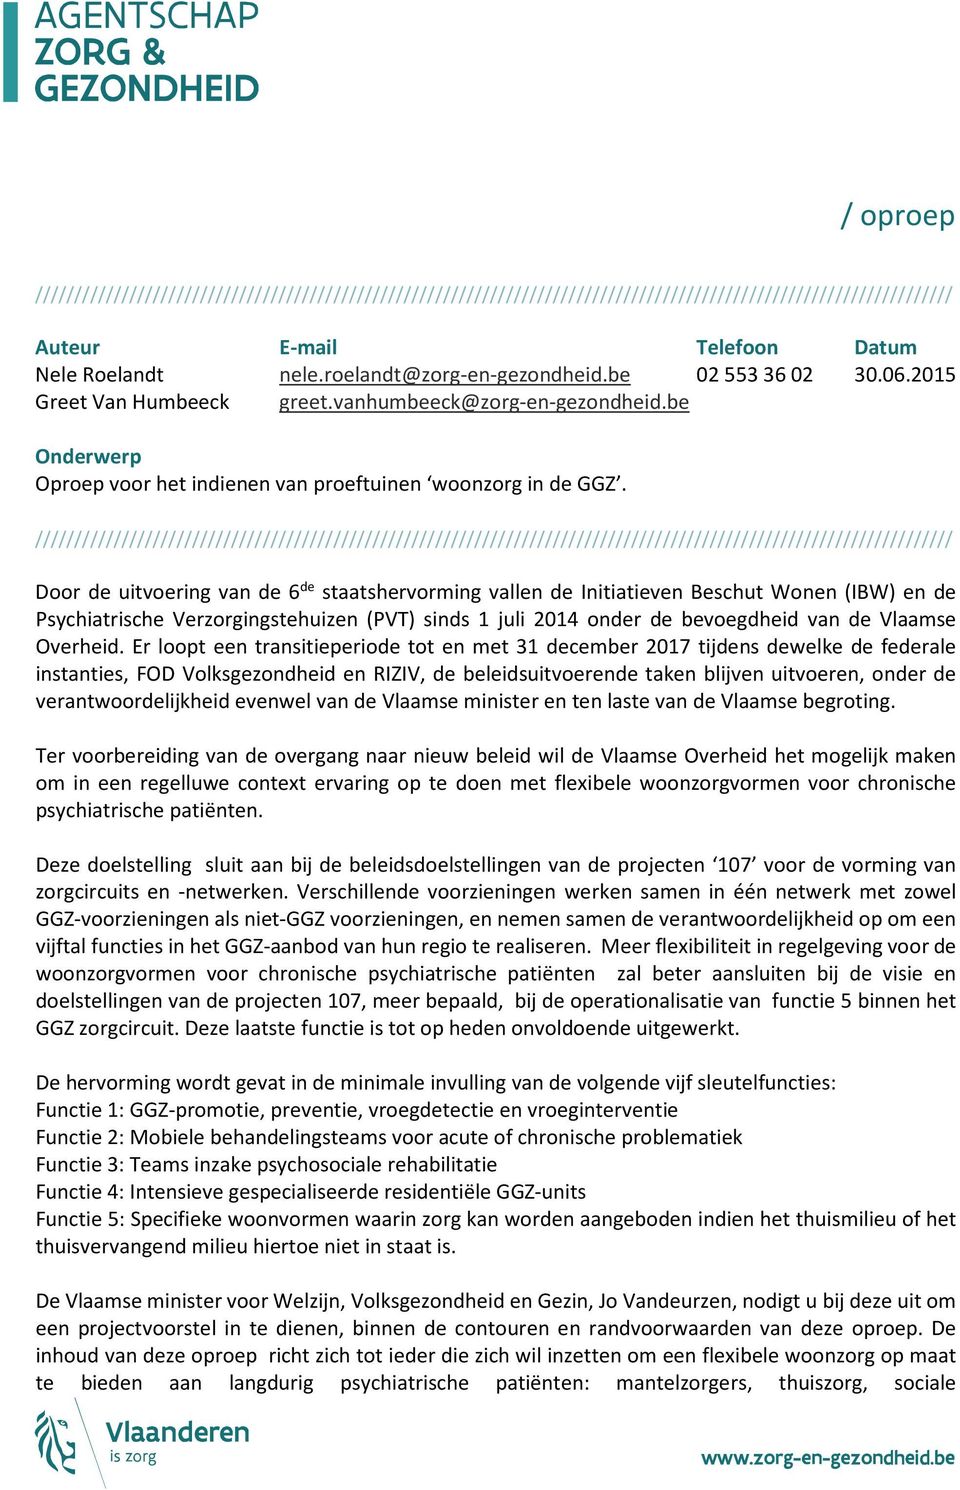 Door de uitvoering van de 6 de staatshervorming vallen de Initiatieven Beschut Wonen (IBW) en de Psychiatrische Verzorgingstehuizen (PVT) sinds 1 juli 2014 onder de bevoegdheid van de Vlaamse